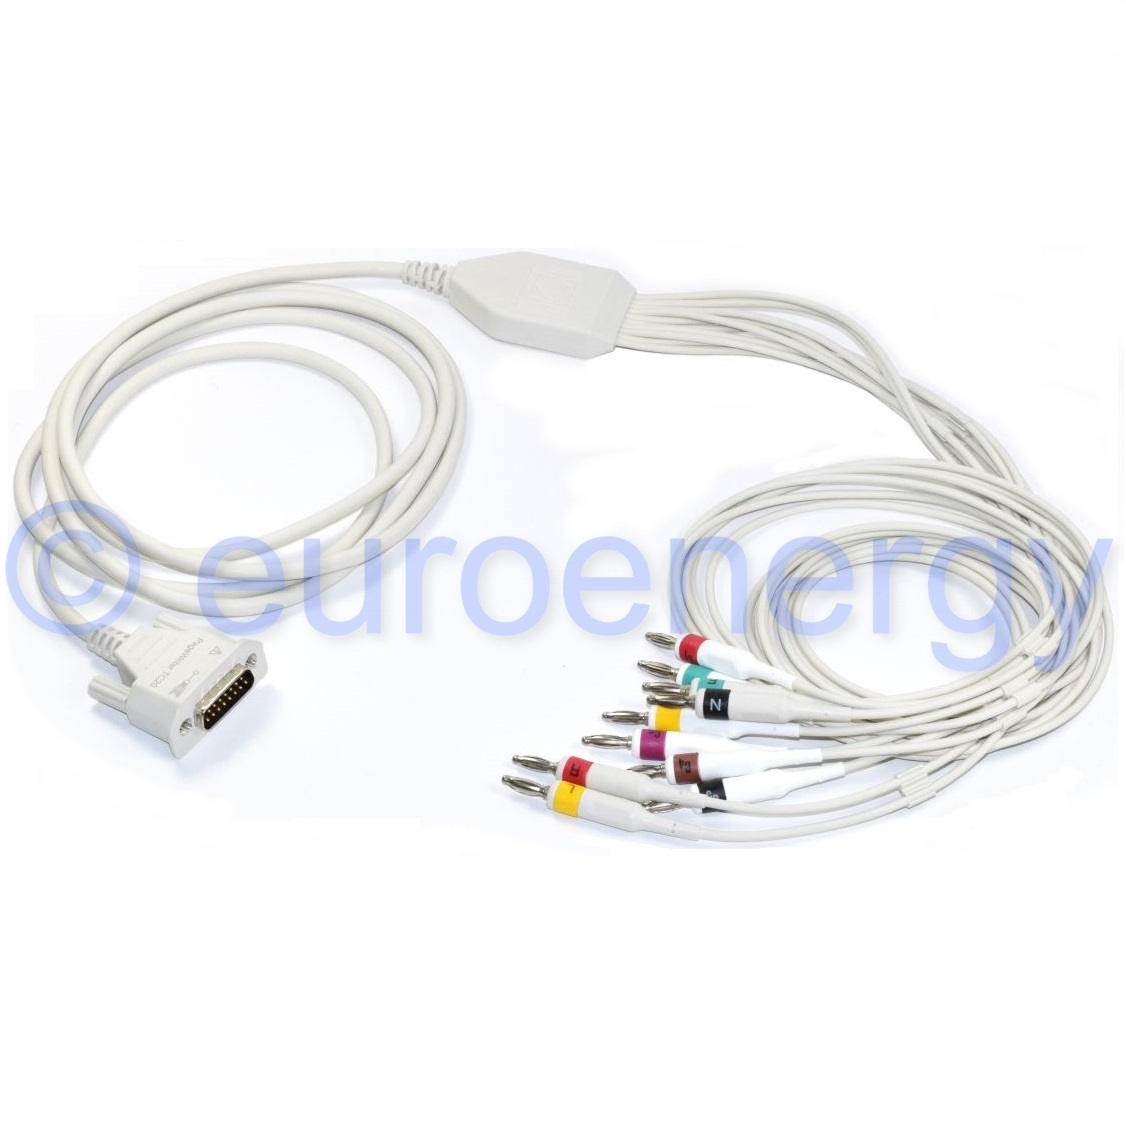 Philips PW TC20 10-Lead Patient IEC Original Medical Diagnostic ECG Patient Cable and Lead Set 989803175891